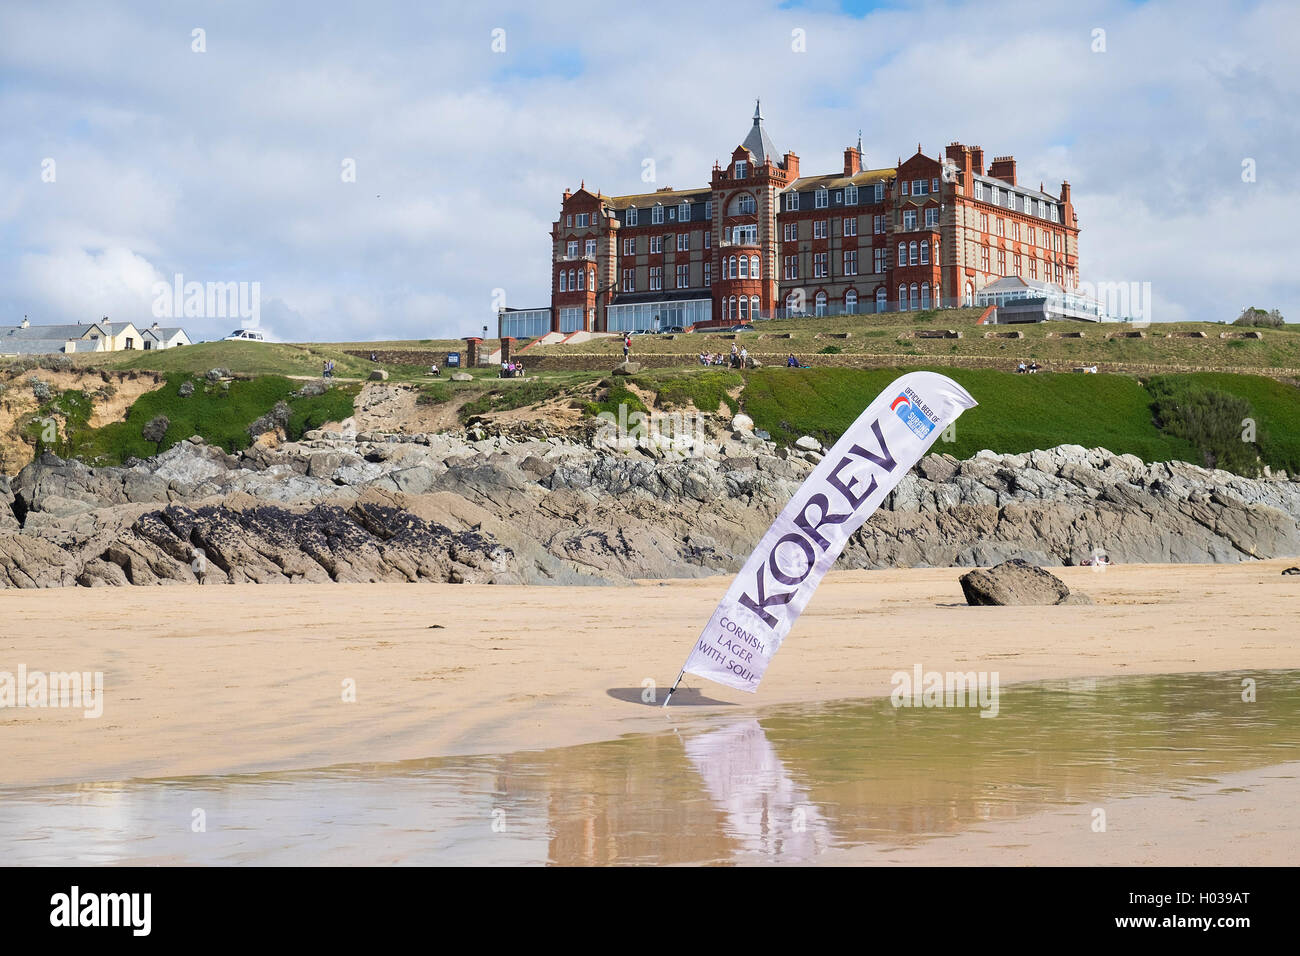 Une Lager Korev bandeau publicitaire sur la plage de Fistral avec la pointe à l'arrière-plan de l'hôtel. Banque D'Images